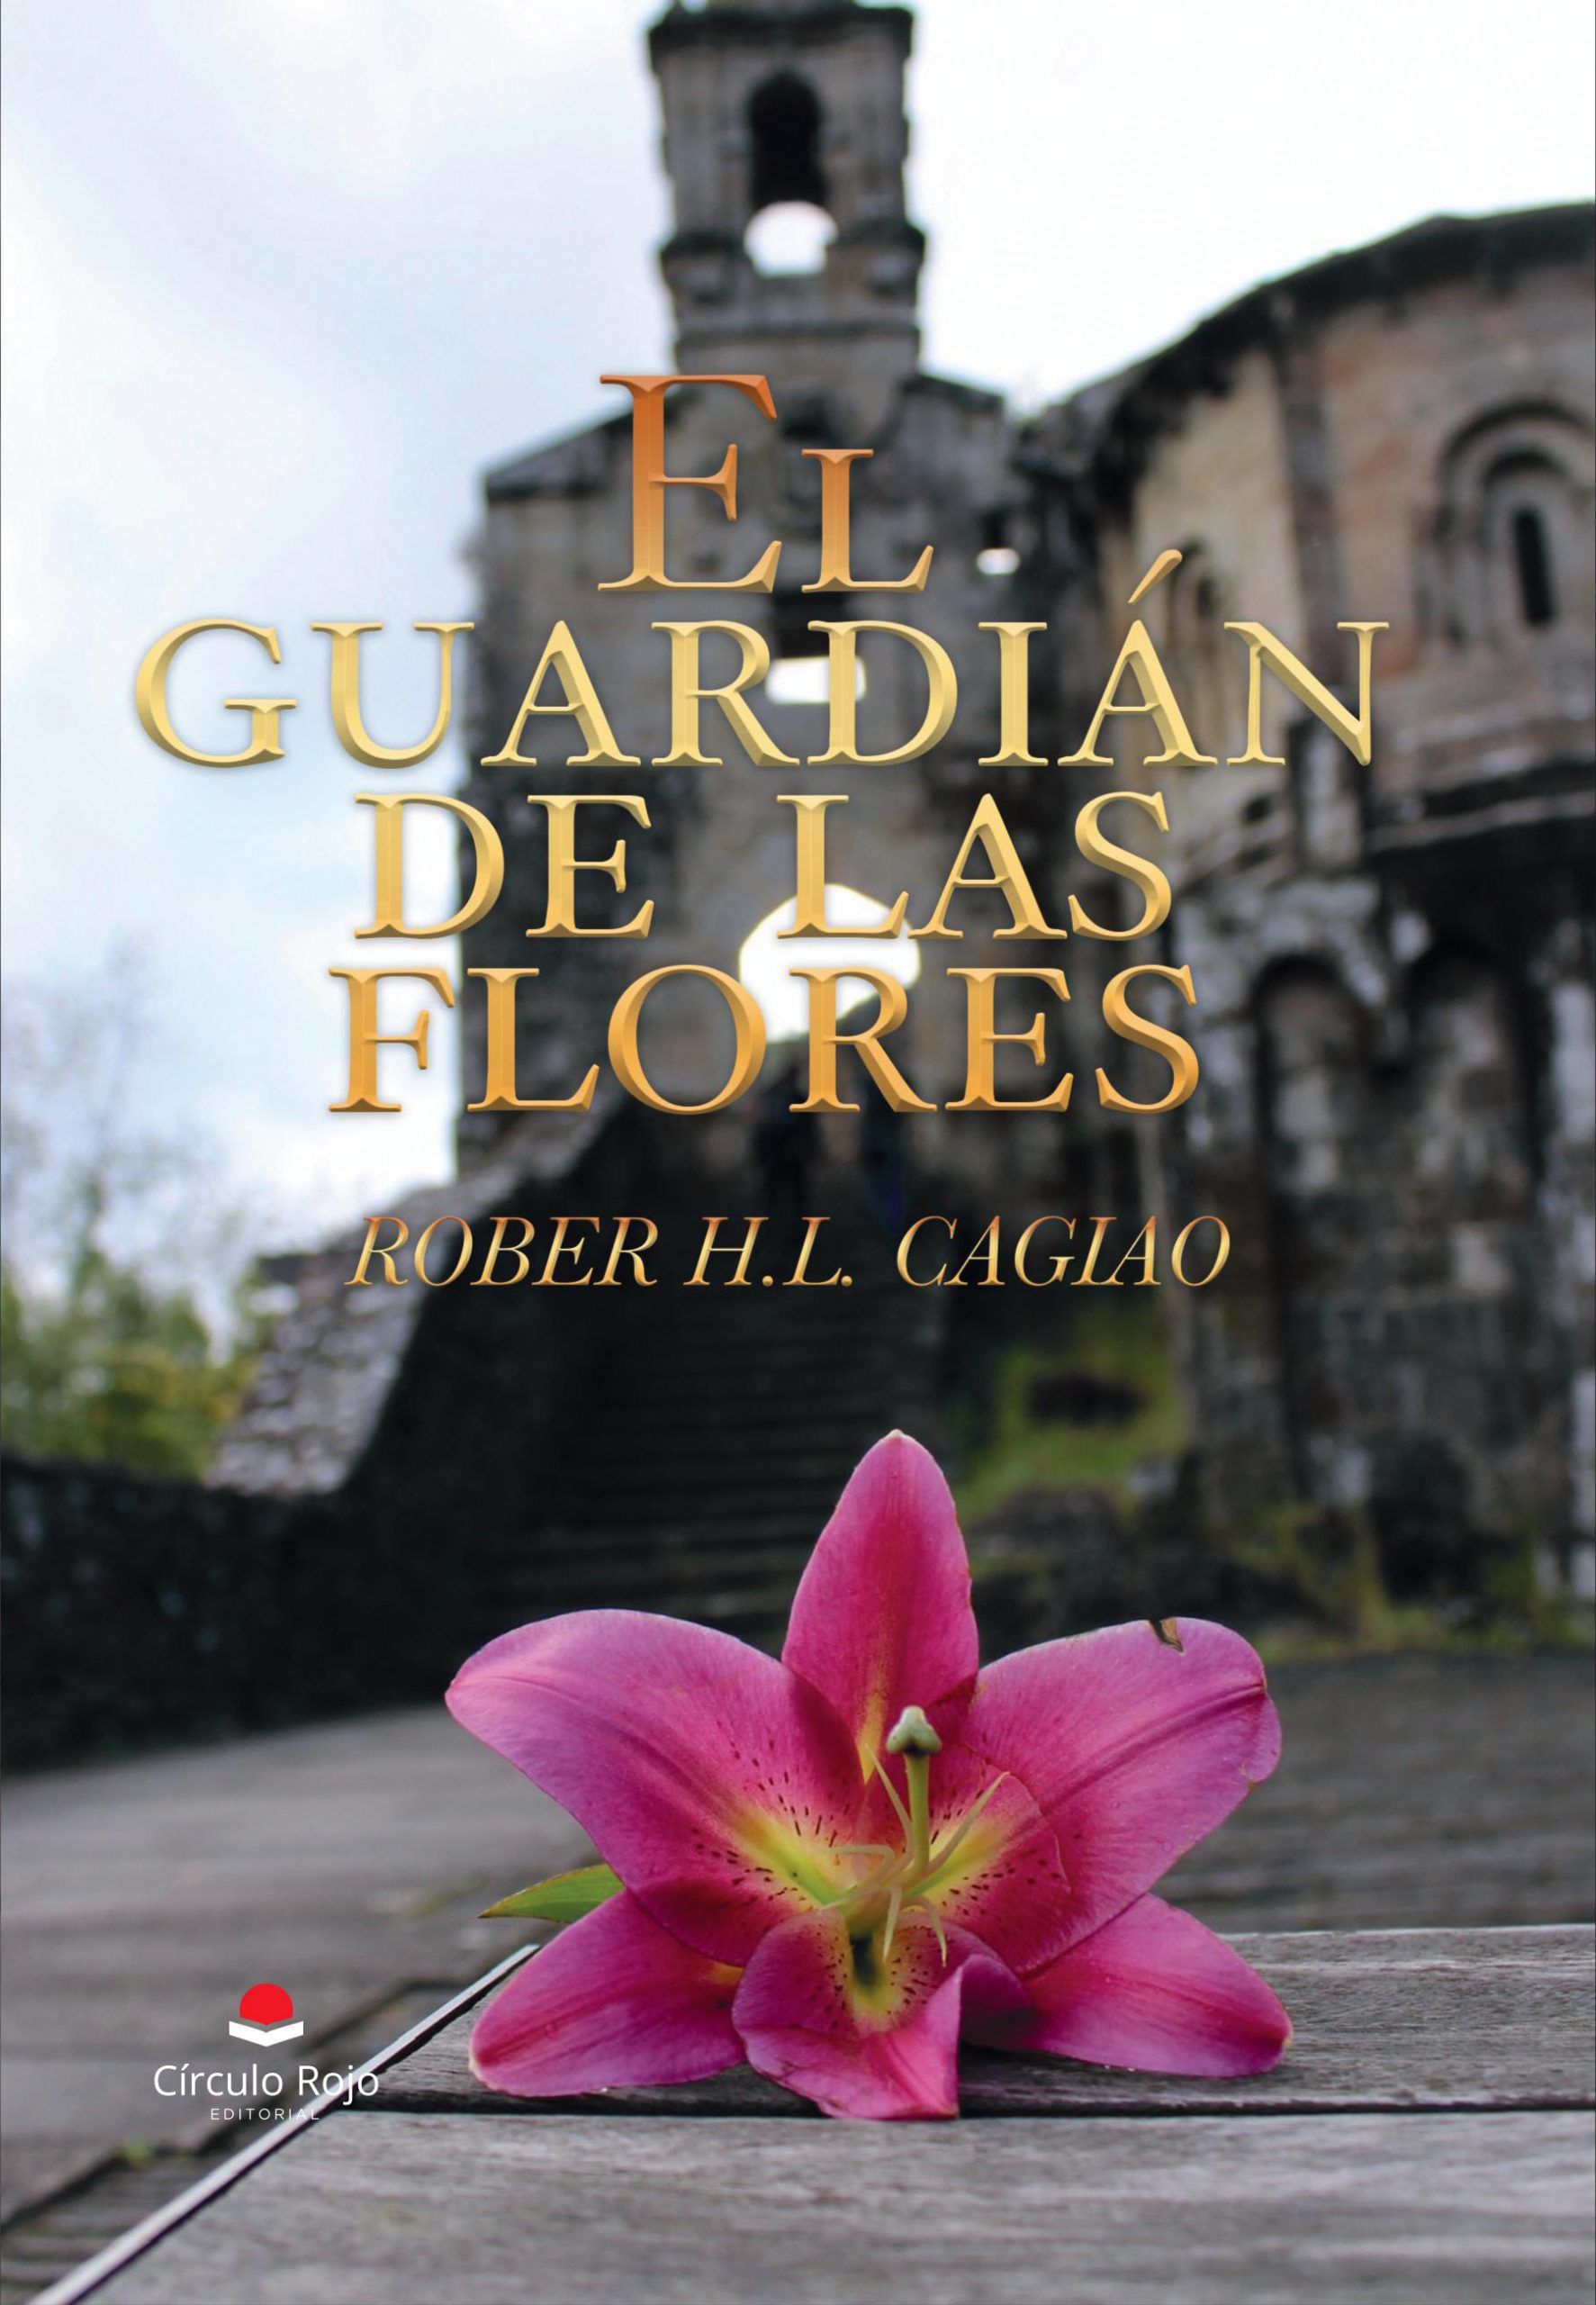 Rober H. L. Cagiao "El guardián de las flores" (Liburuaren aurkezpena / Presentación del libro)